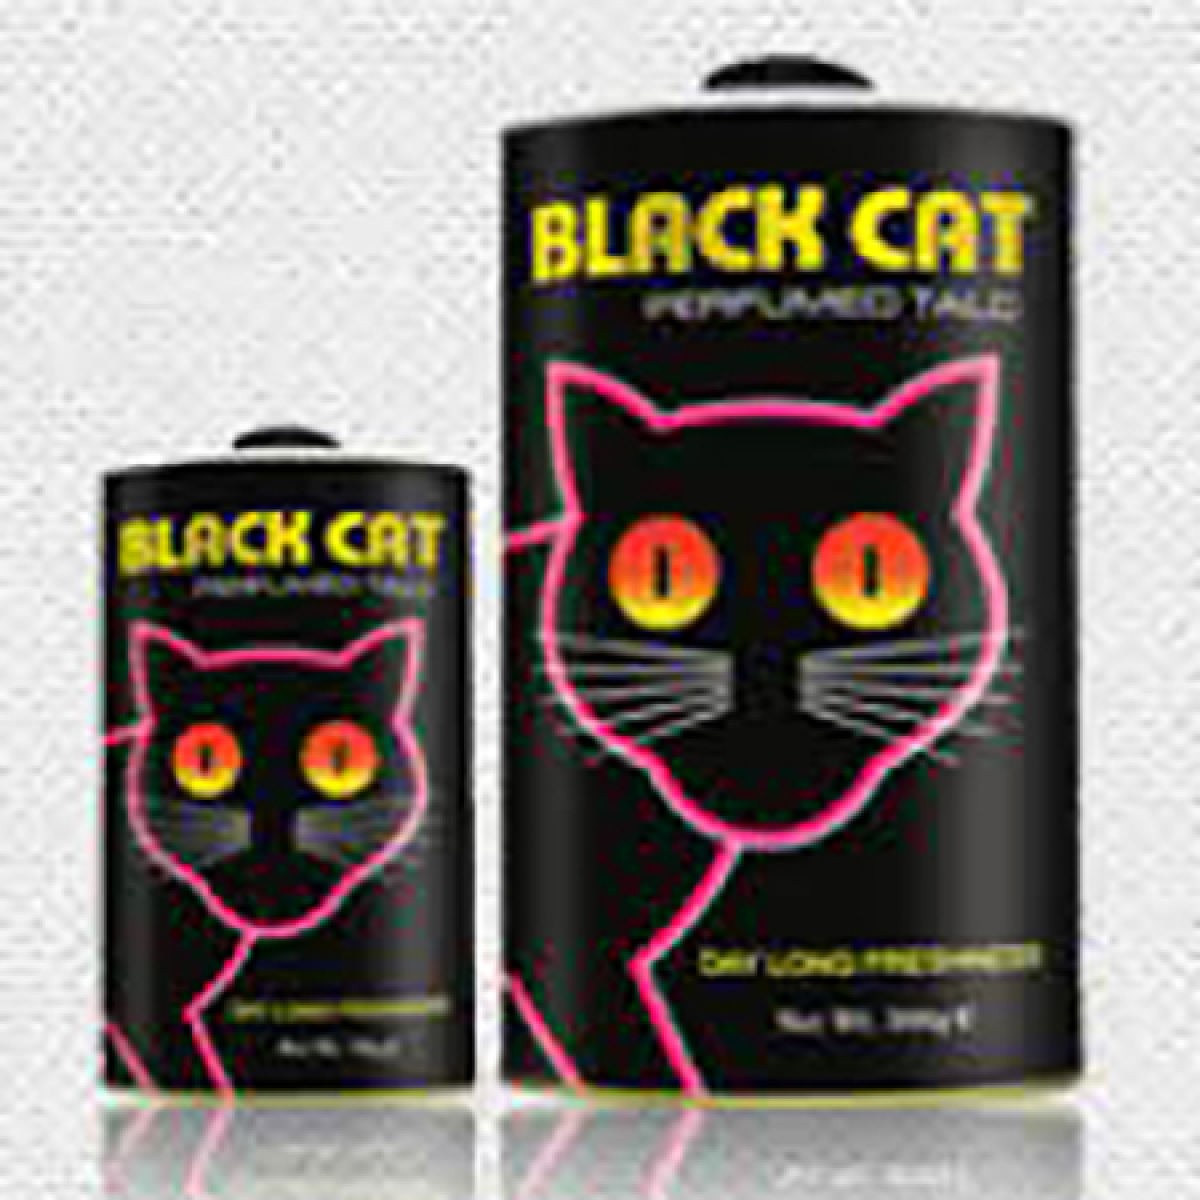 PERIDOT BLACK CAT PERFUMED TALC POWDER